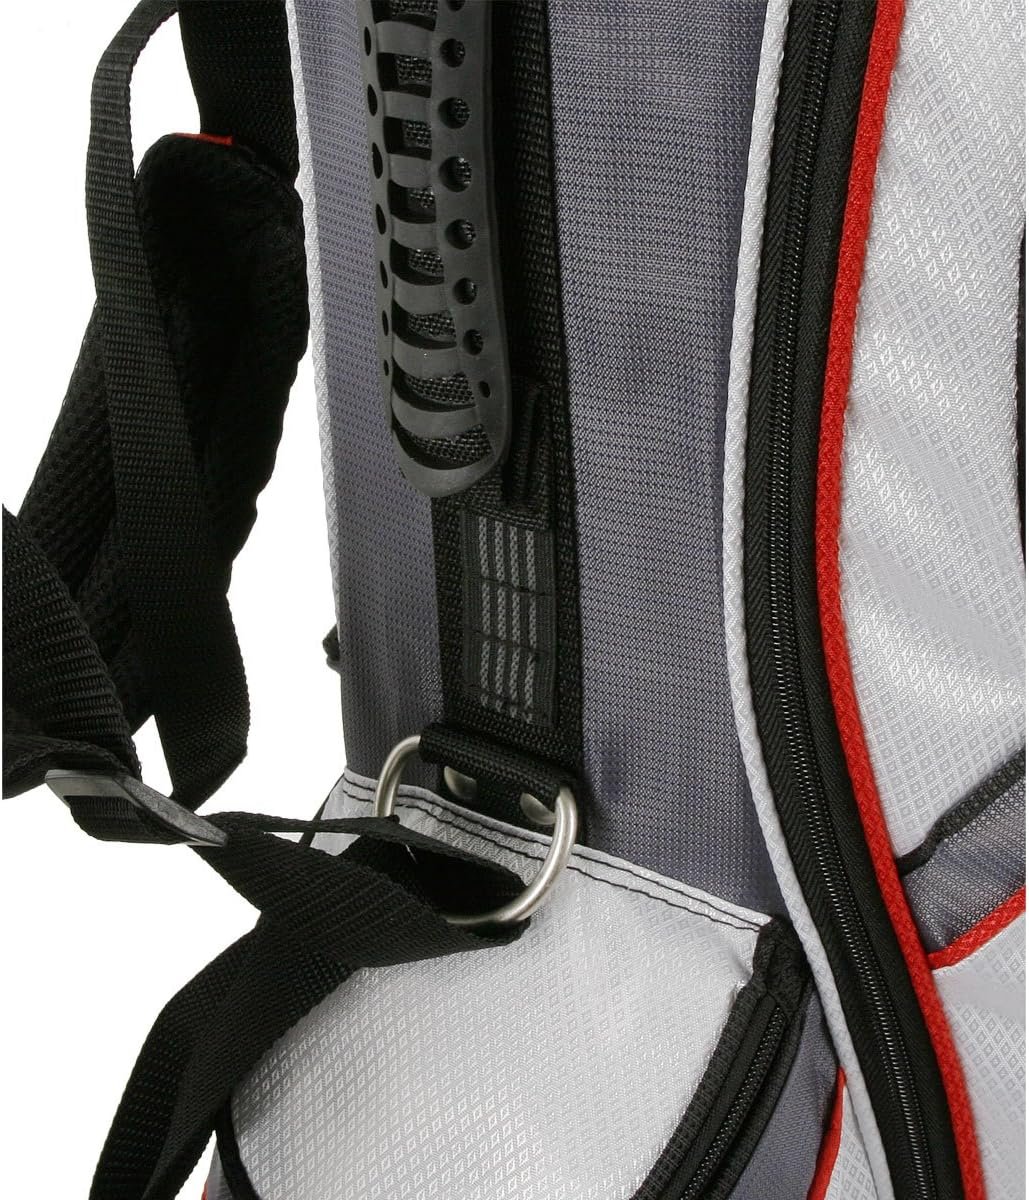 PowerBilt Powerbilt TPS Dunes 14-Way Golf Stand Bag